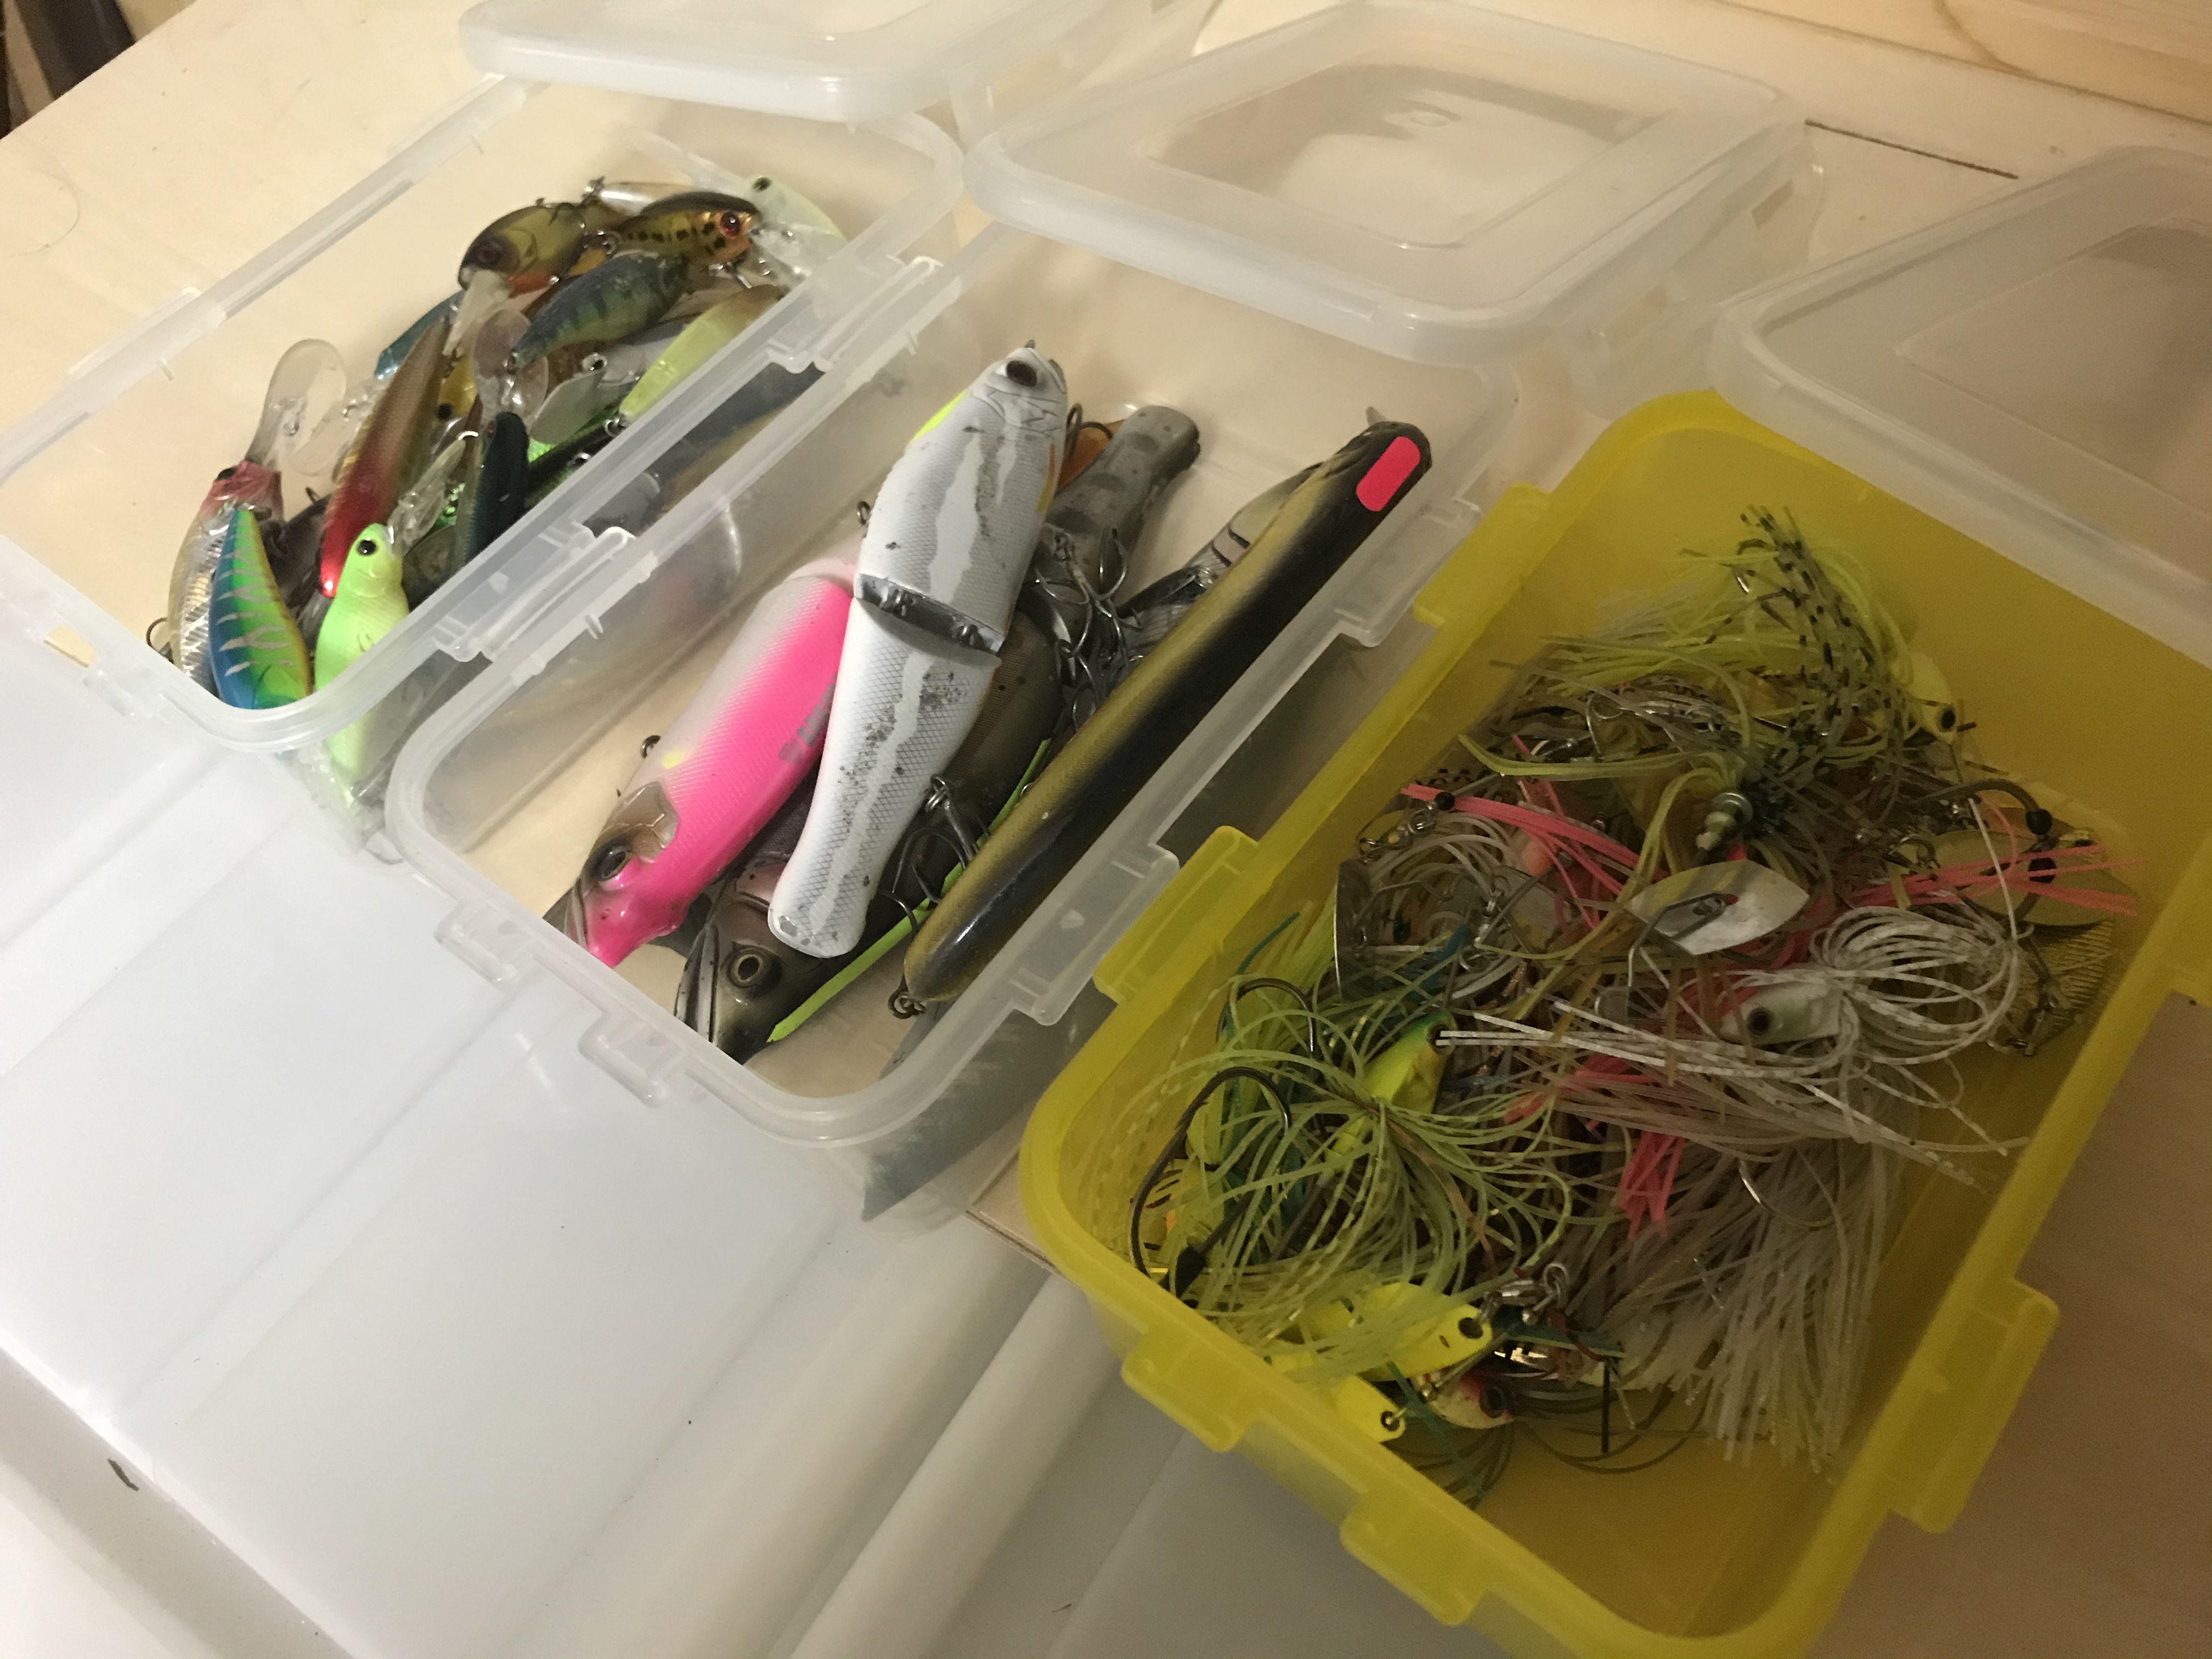 溢れる釣り道具 どう整理する 釣り具の整理整頓 収納方法を考える ナナブンノニブログ